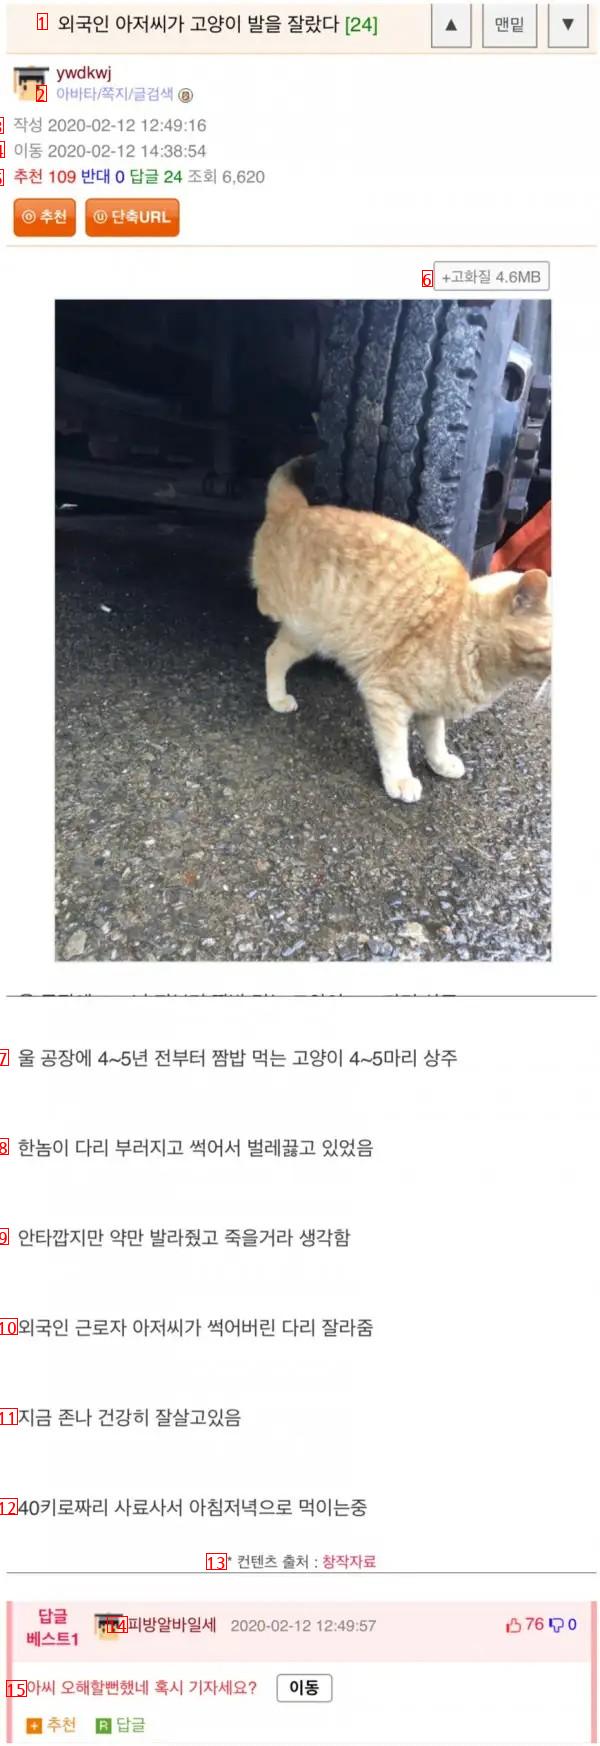 A foreigner cut a cat's foot.jpg